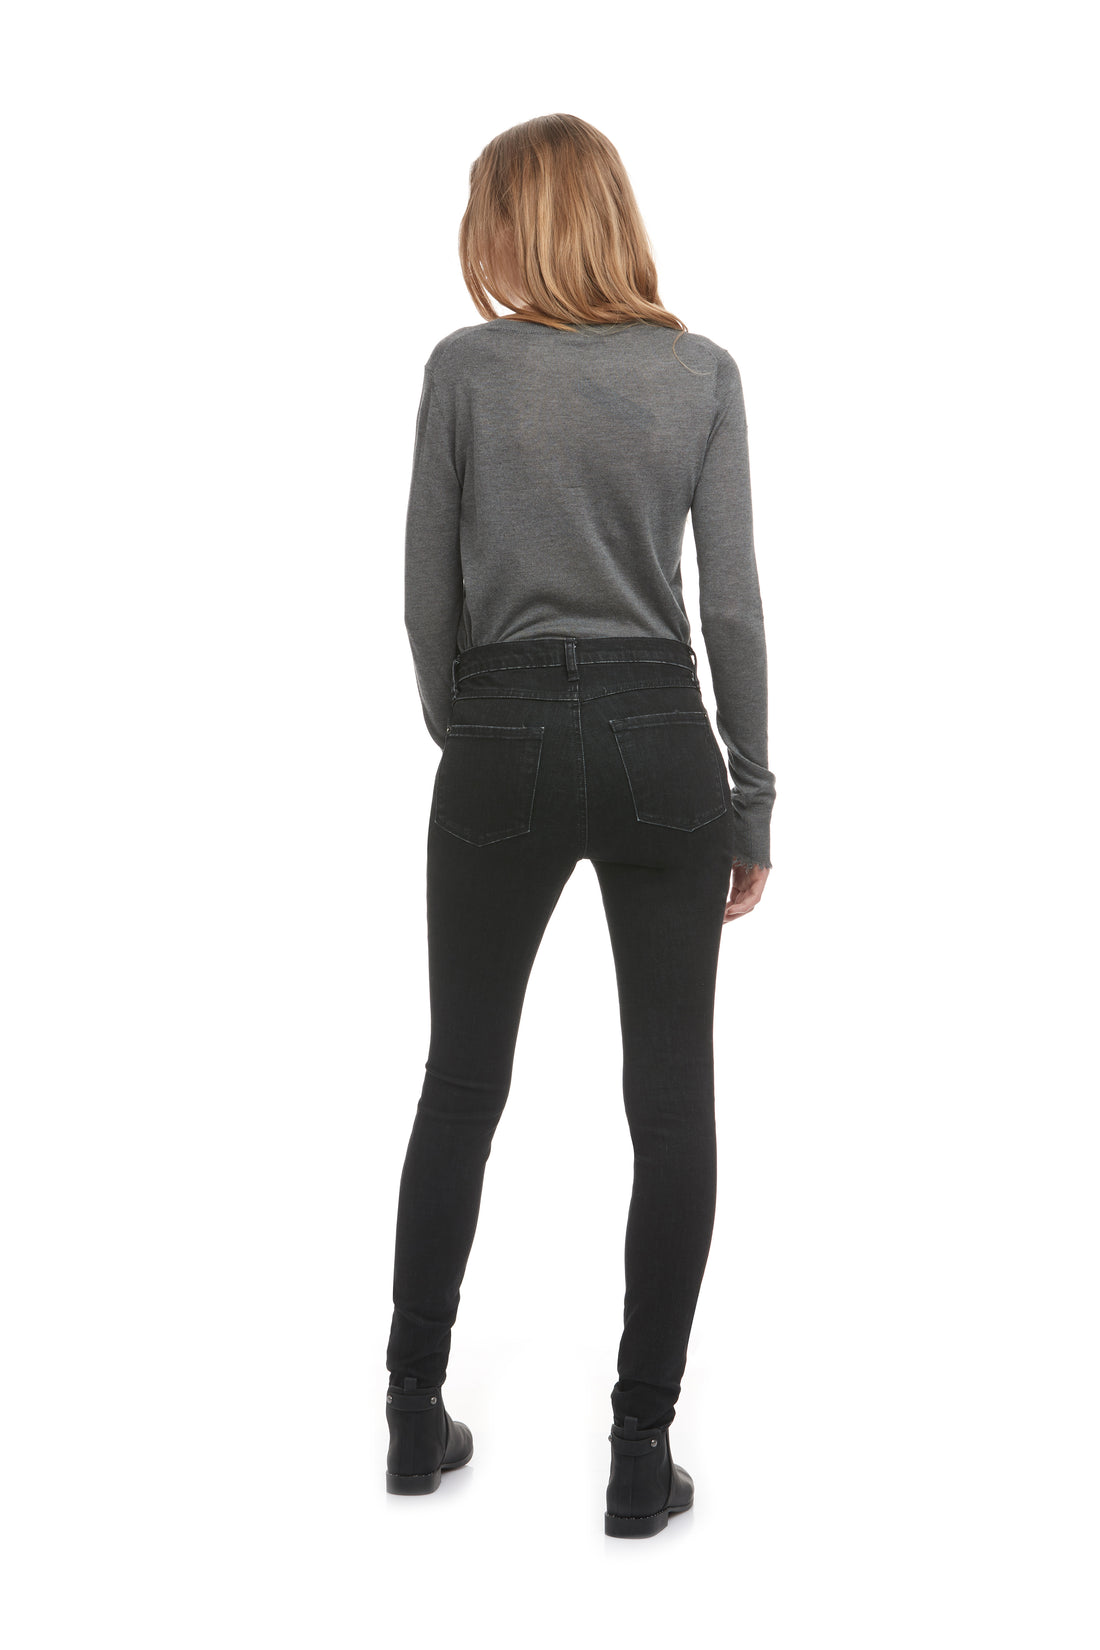 Jeans T. Très Haute, Skinny 1729BK-R30 Yoga Jeans